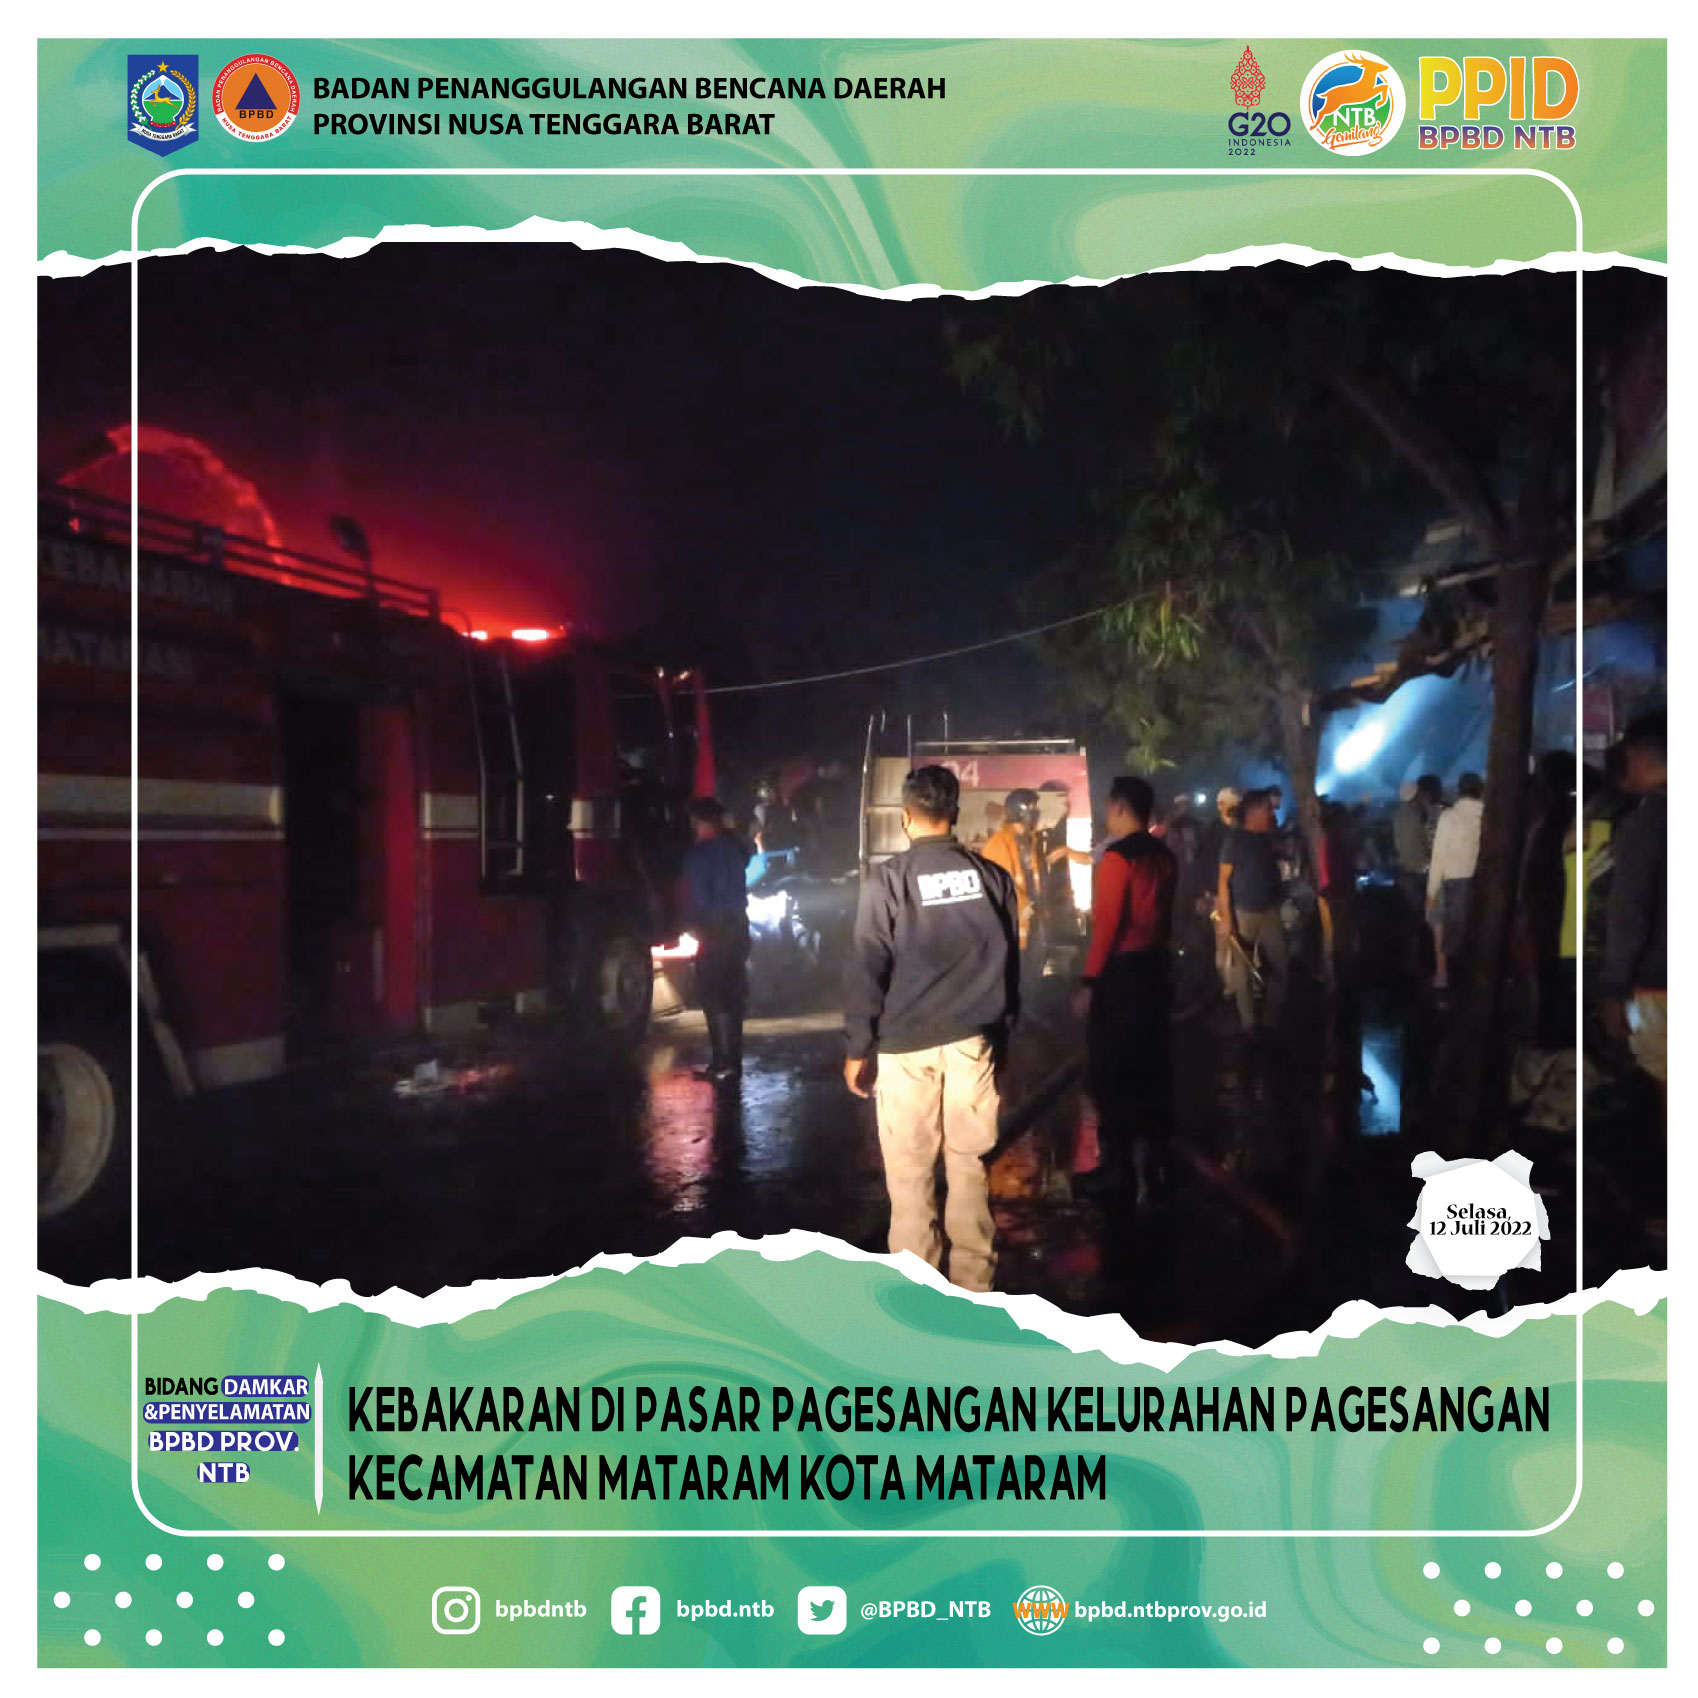 Kebakaran di Pasar Pagesangan Kelurahan Pagesangan Kecamatan Mataram Kota Mataram (Rabu, 13 Juli 2022)